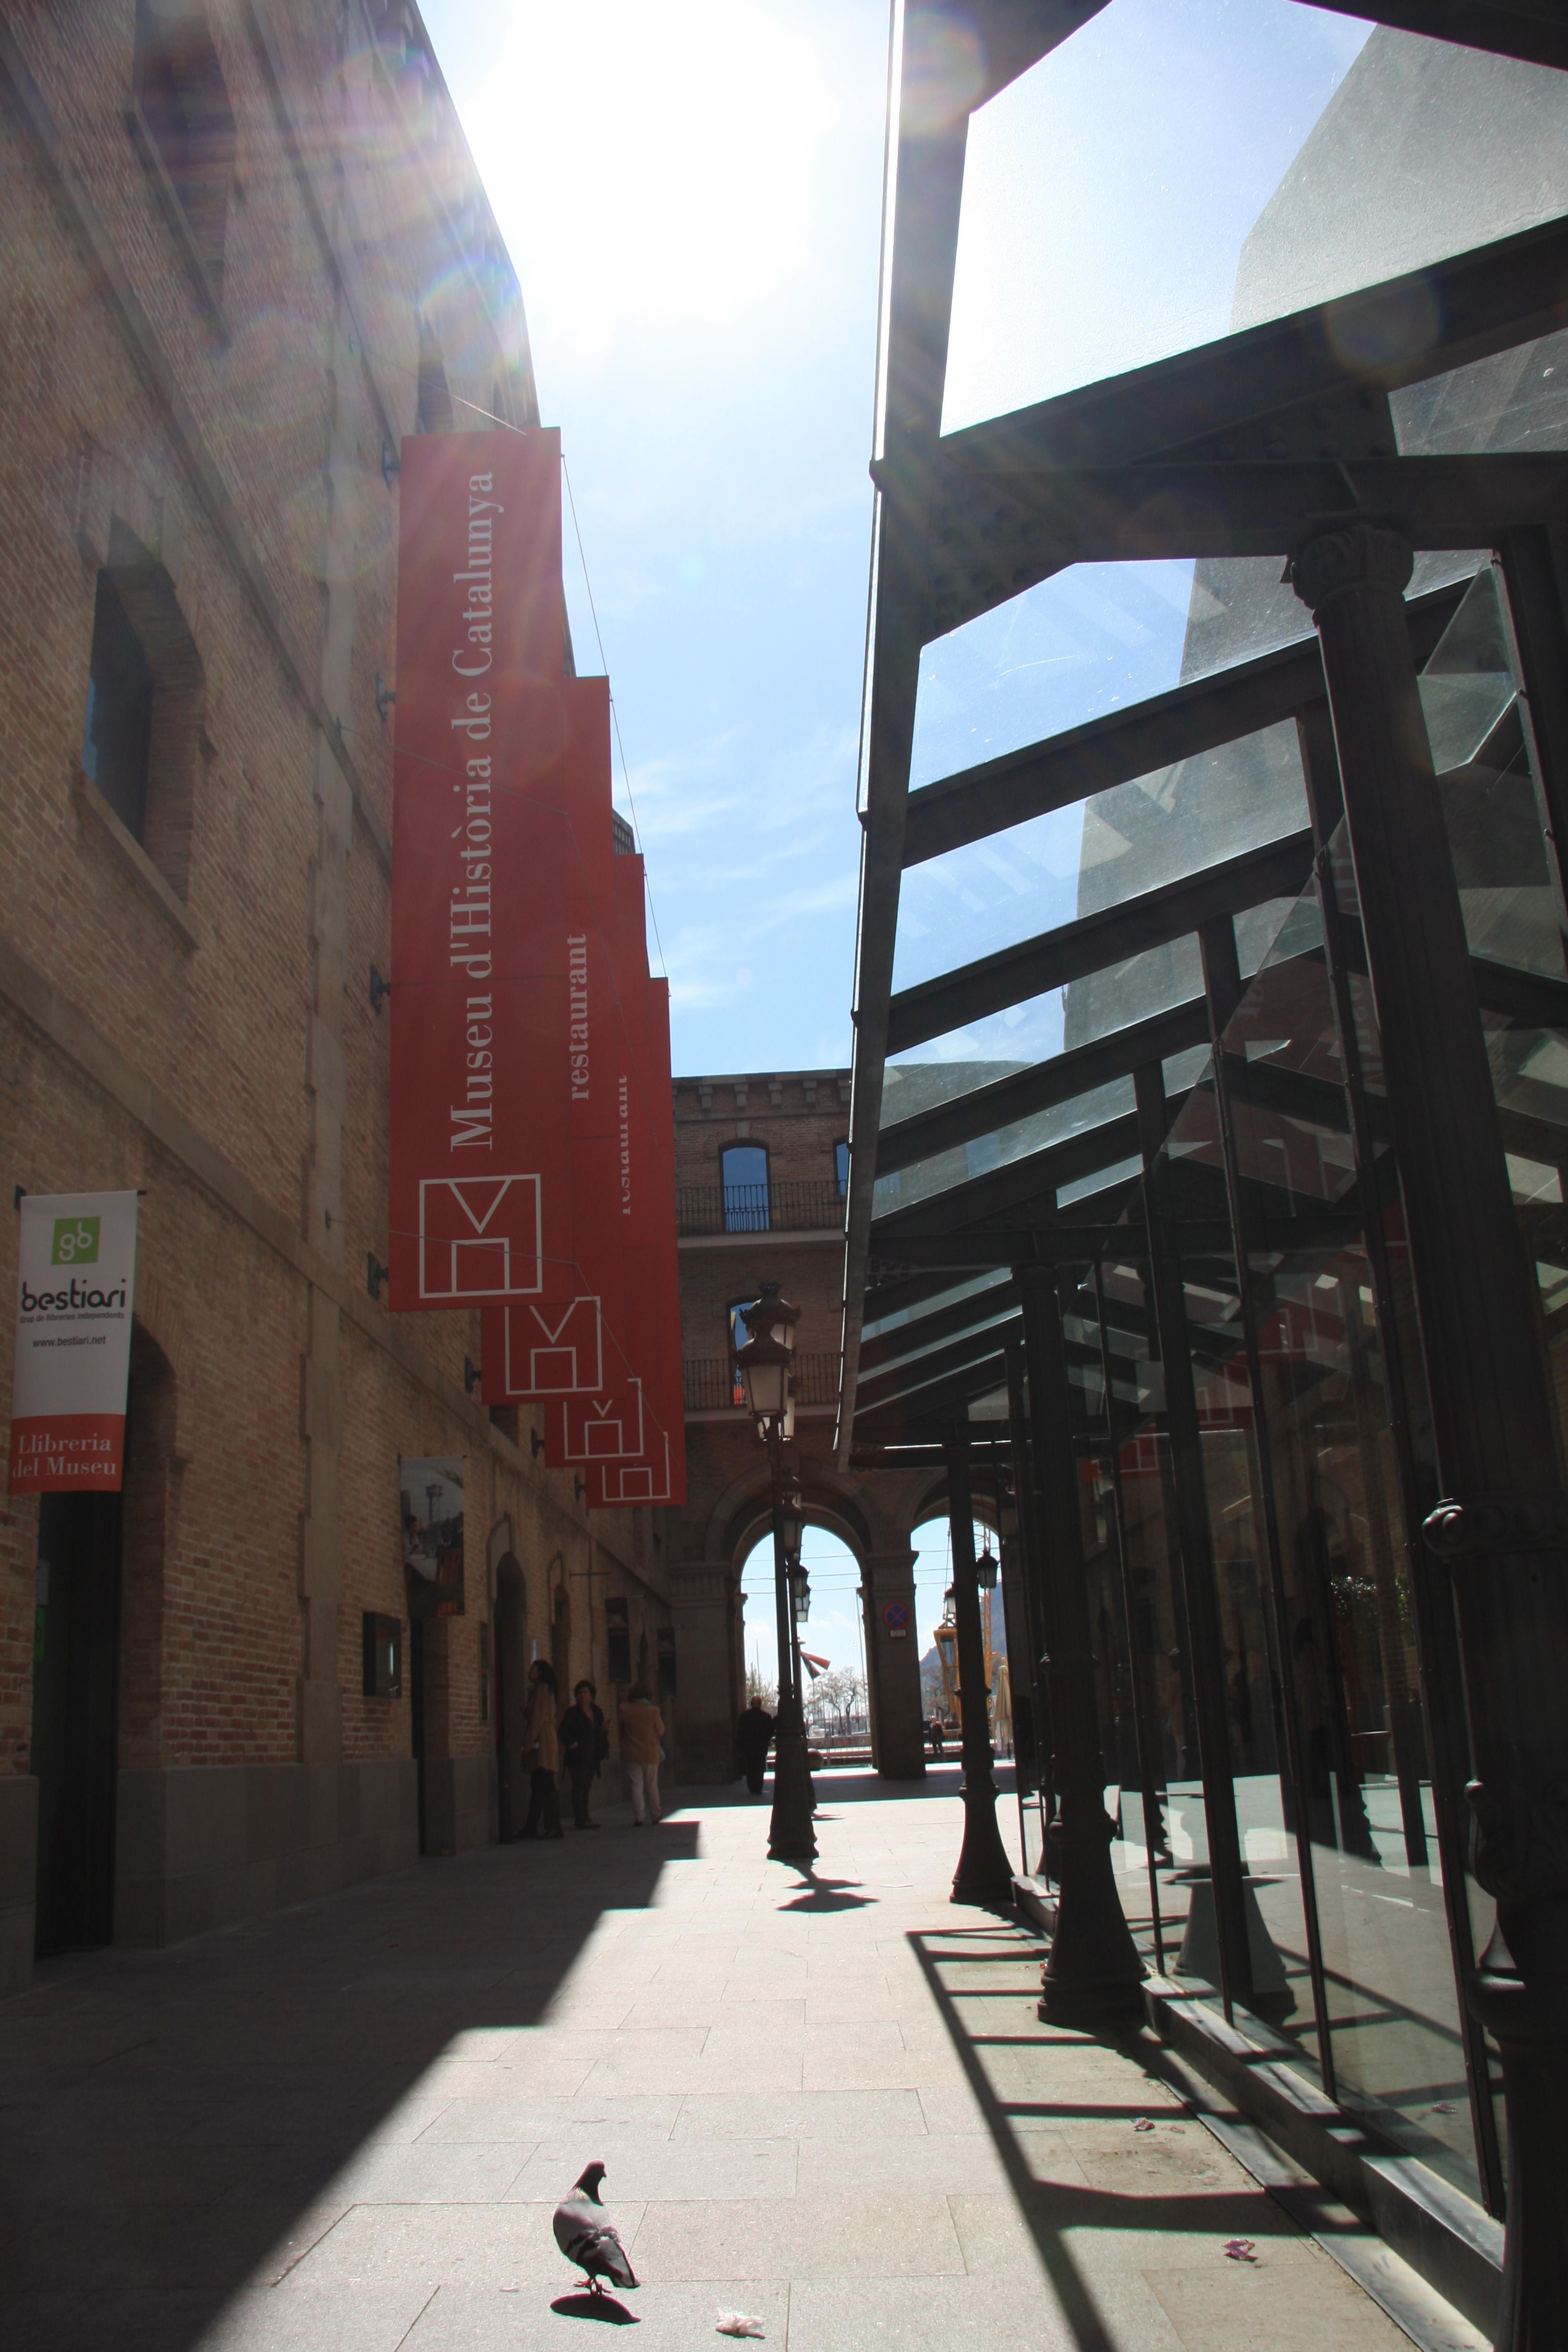 Cover image of this place Museu D'Història De Catalunya